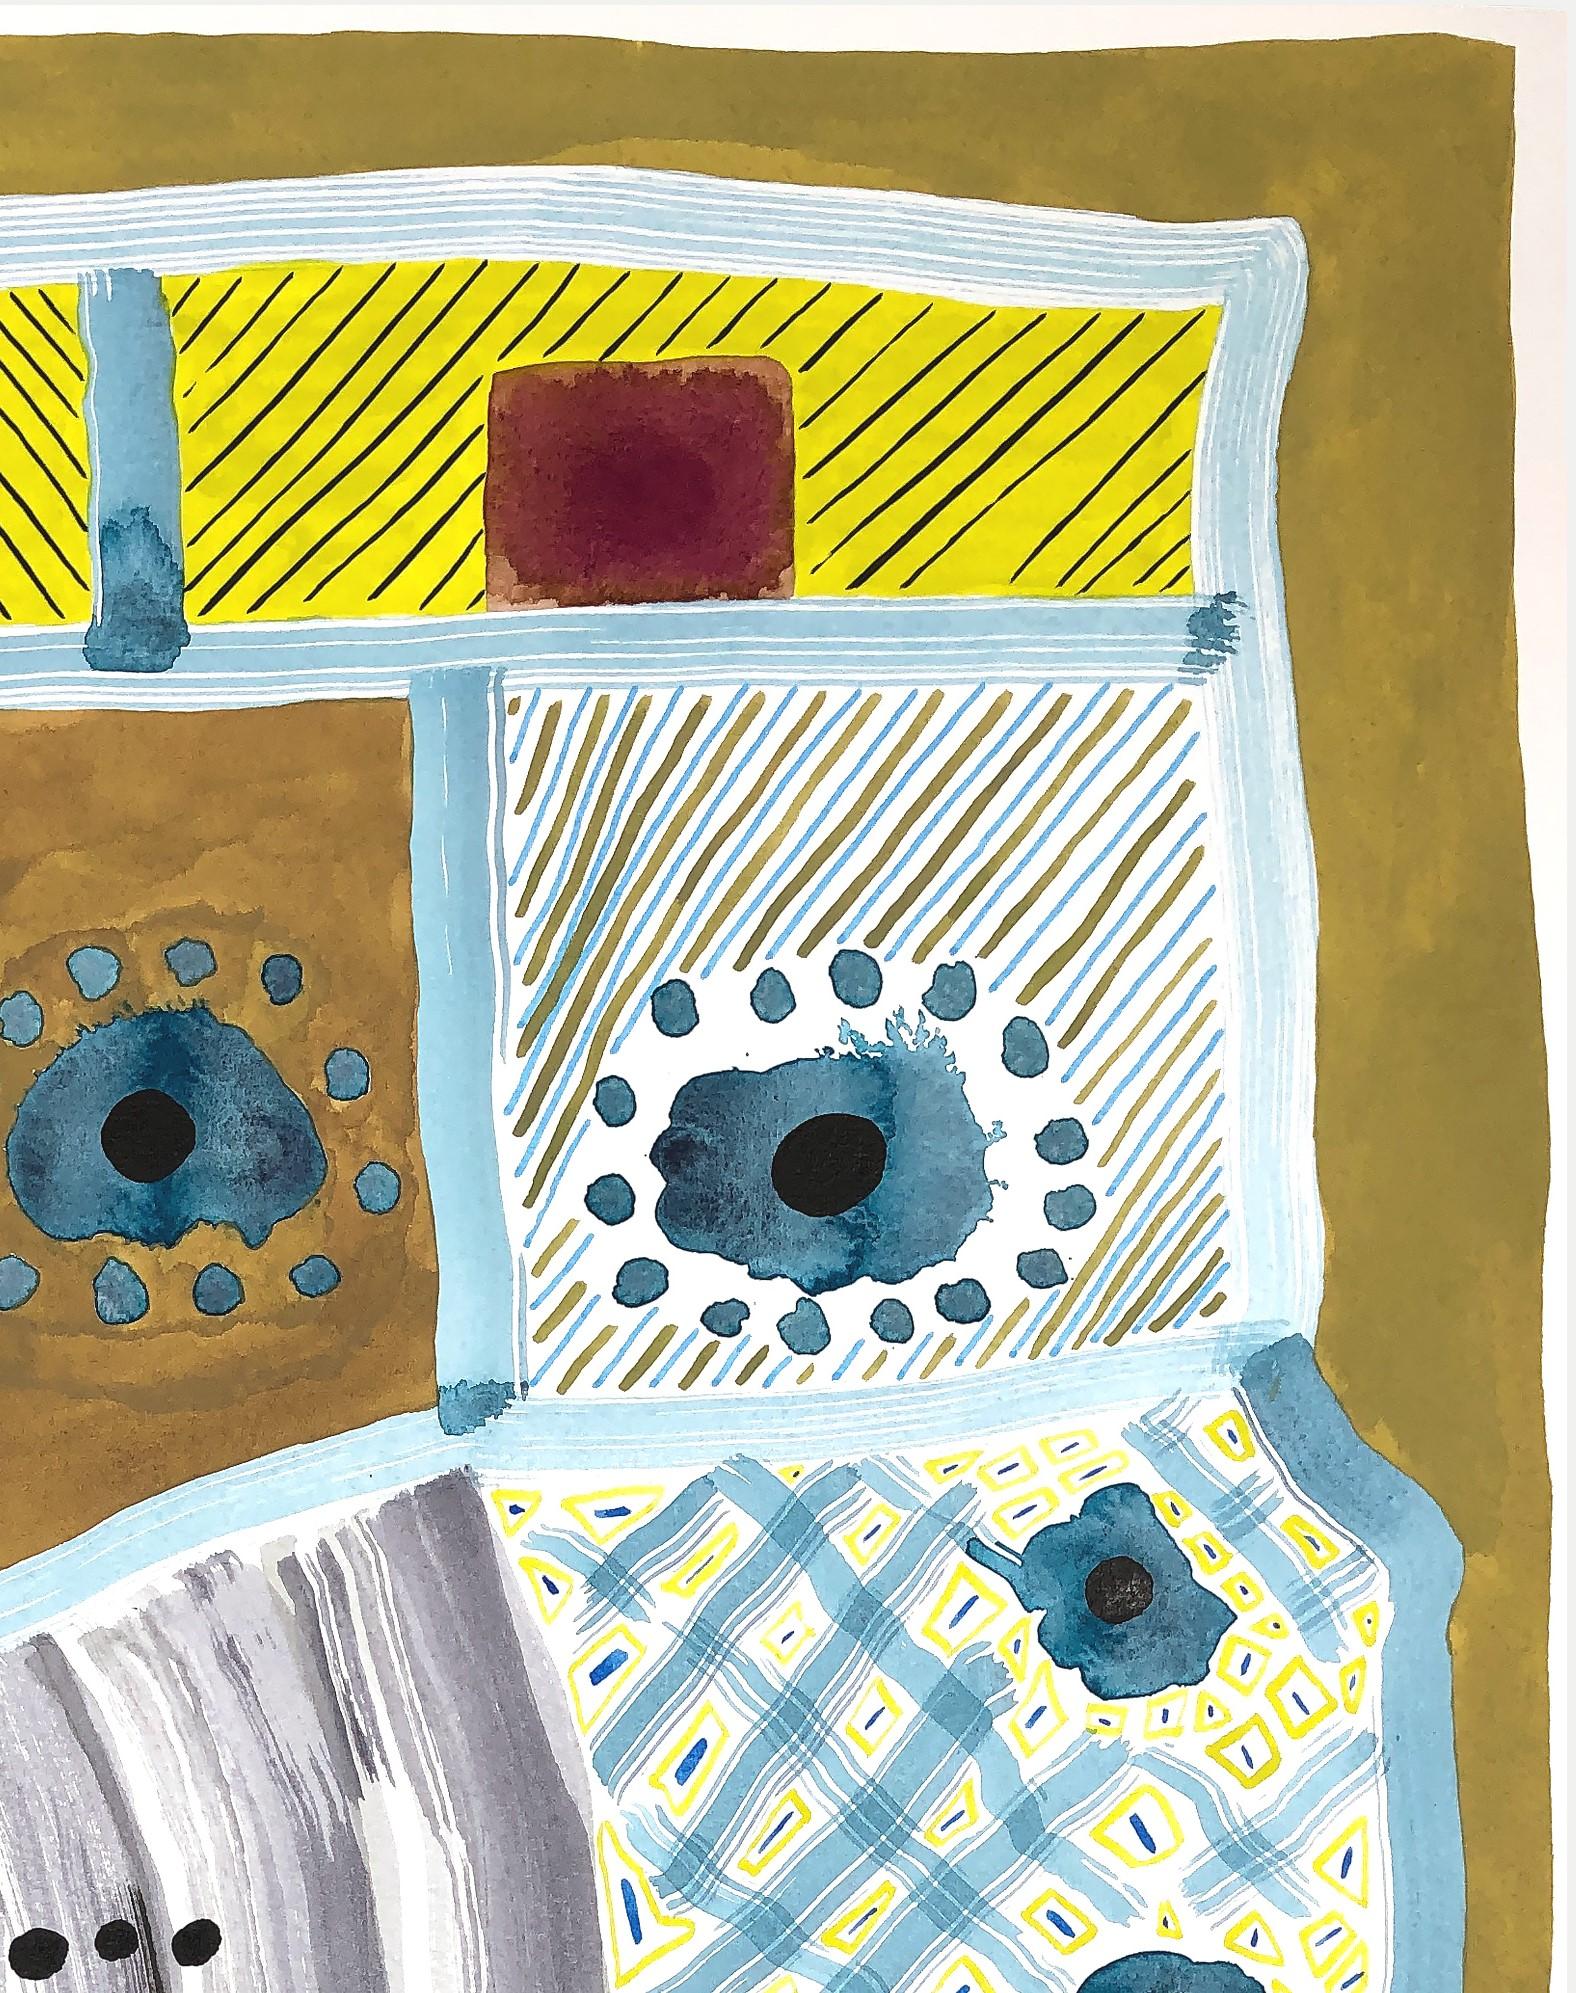 Œuvre abstraite et géométrique contemporaine à motifs colorés, réalisée sur papier par l'artiste texan Max Manning. L'œuvre comporte des éléments organiques et  des formes géométriques en jaune, bleu, noir et blanc. Signé par l'artiste au dos de la